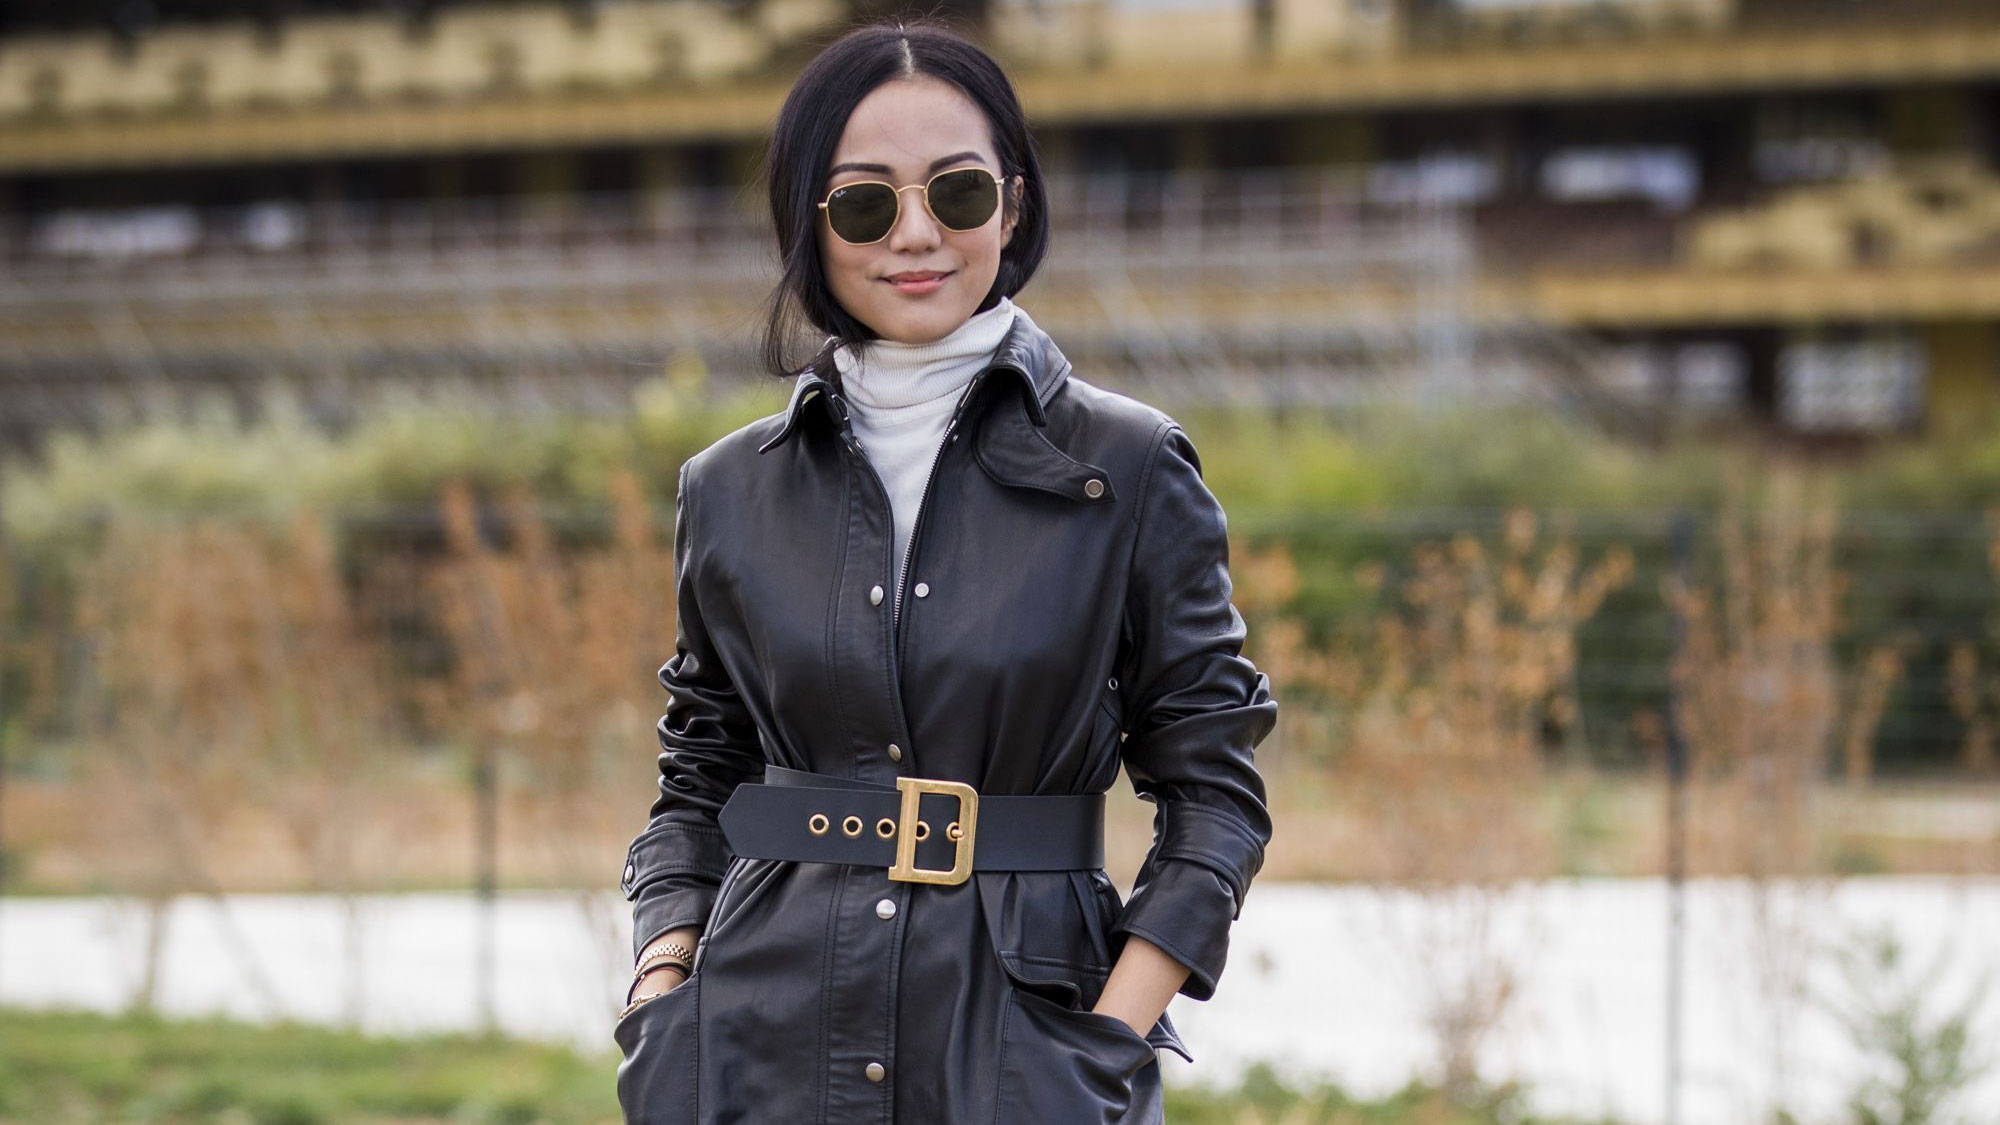 Women Black Jacket Cropped Long Sleeve Jackets 2019 Spring Autumn Fashion Coat 